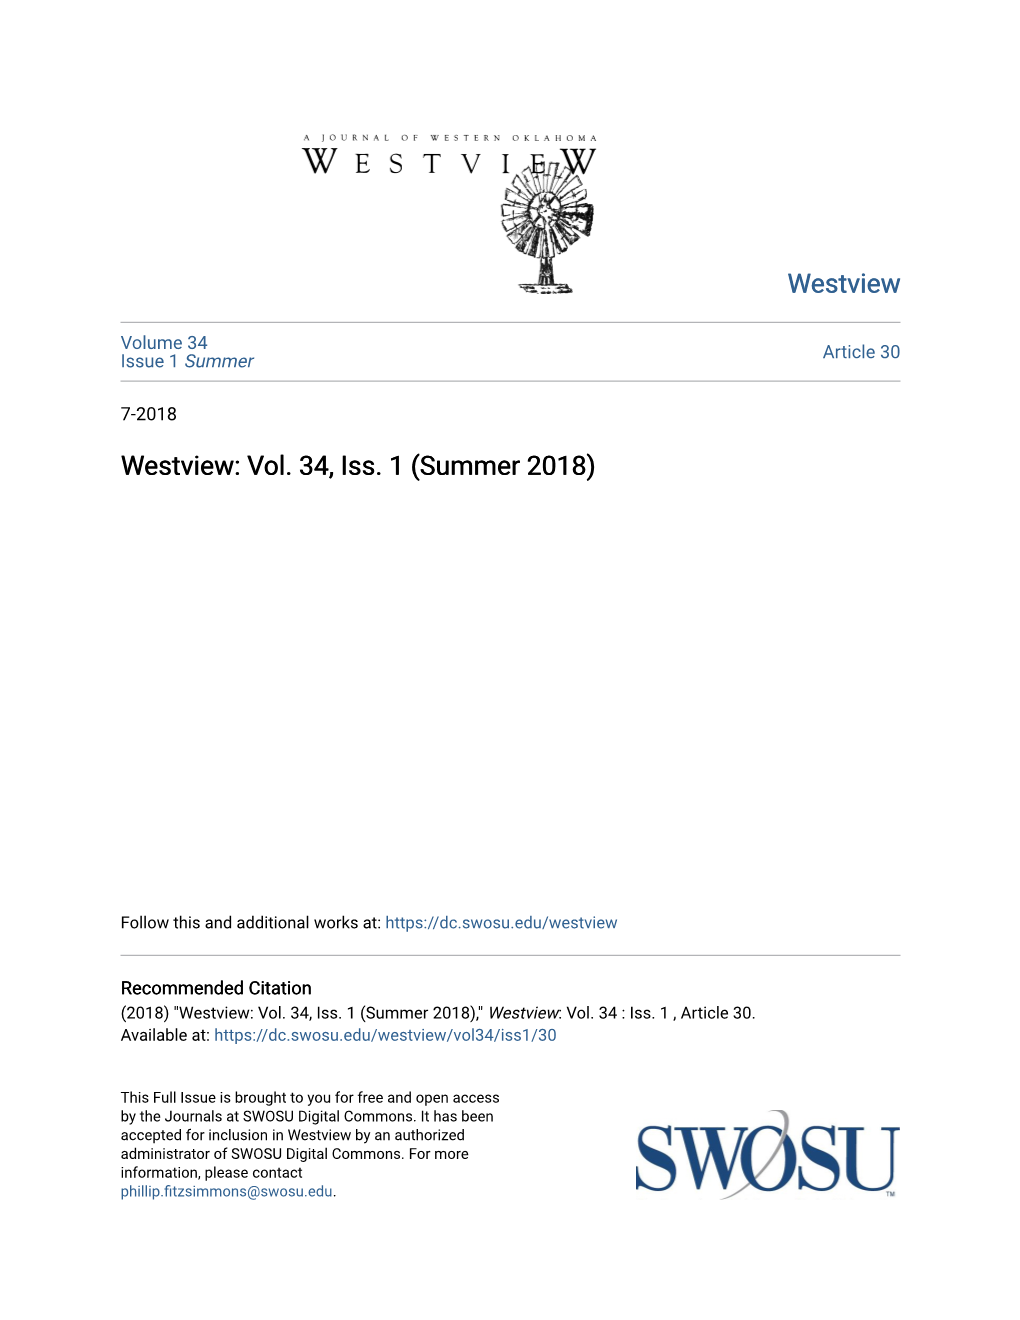 Westview: Vol. 34, Iss. 1 (Summer 2018)